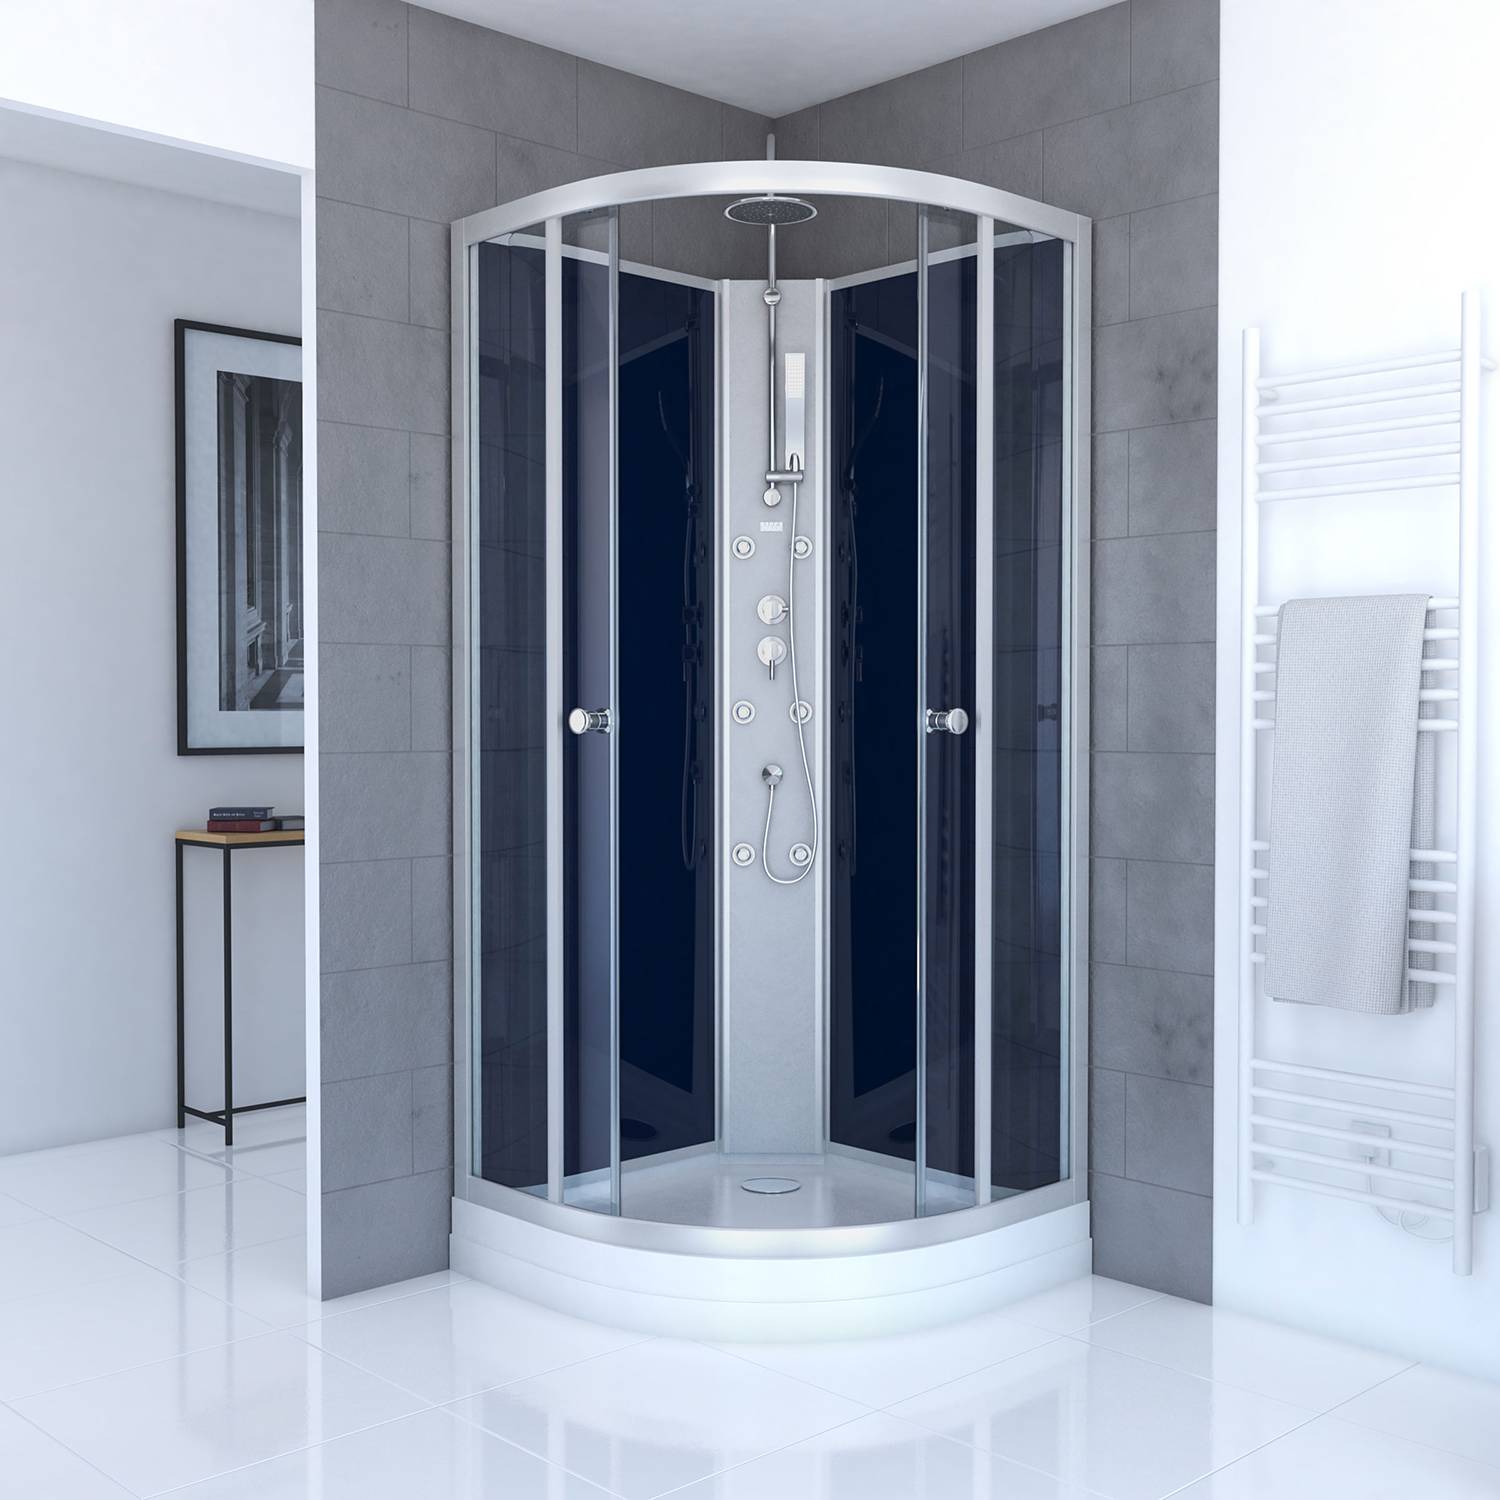 Duschen in Blau Preisvergleich | Moebel 24